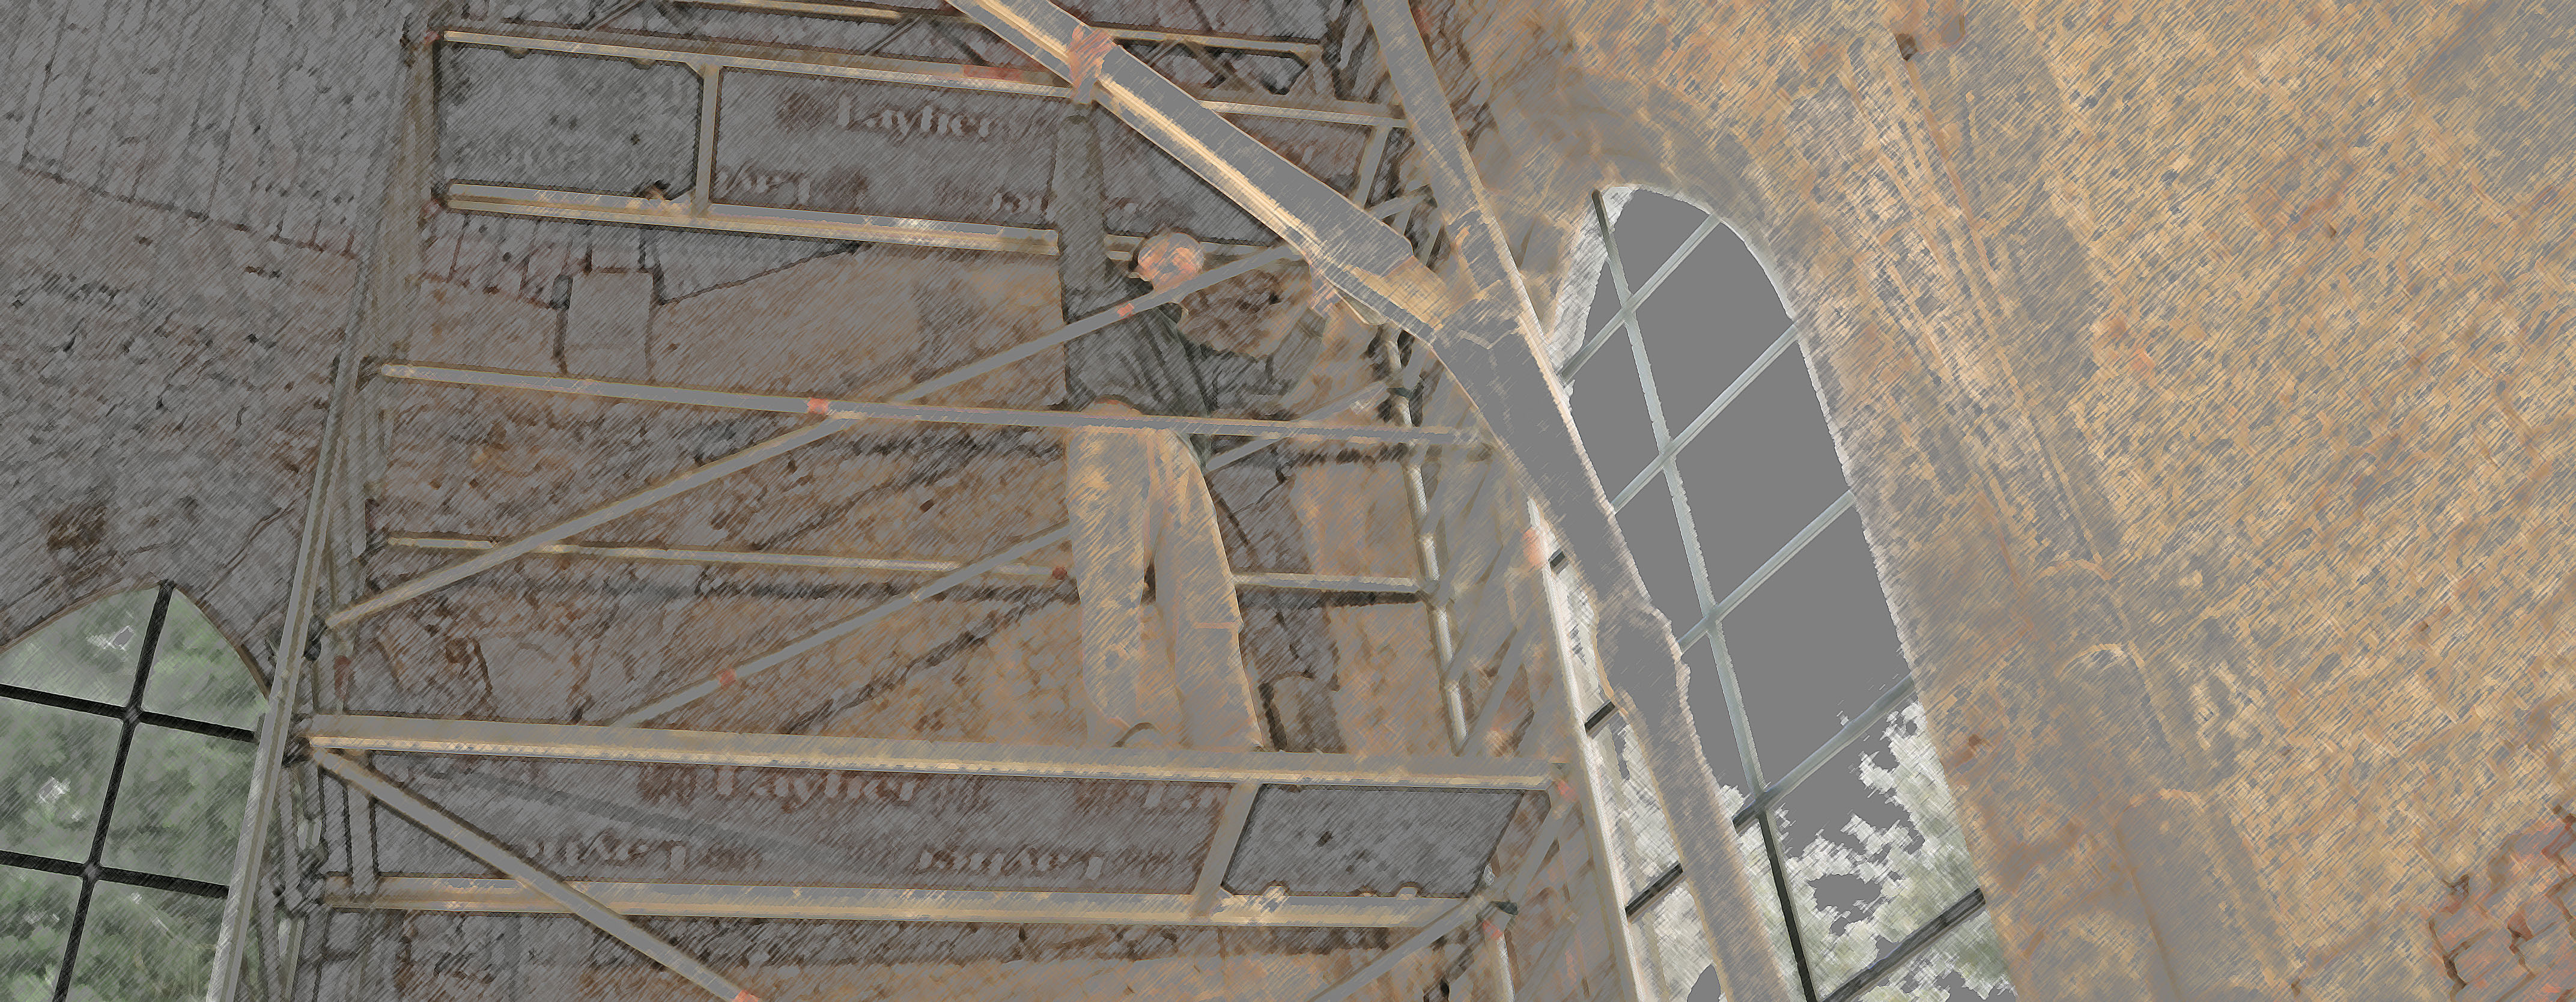 Mann auf Gerüst in der Wintringer Kapelle beim Aufbau einer Kunstinstallation